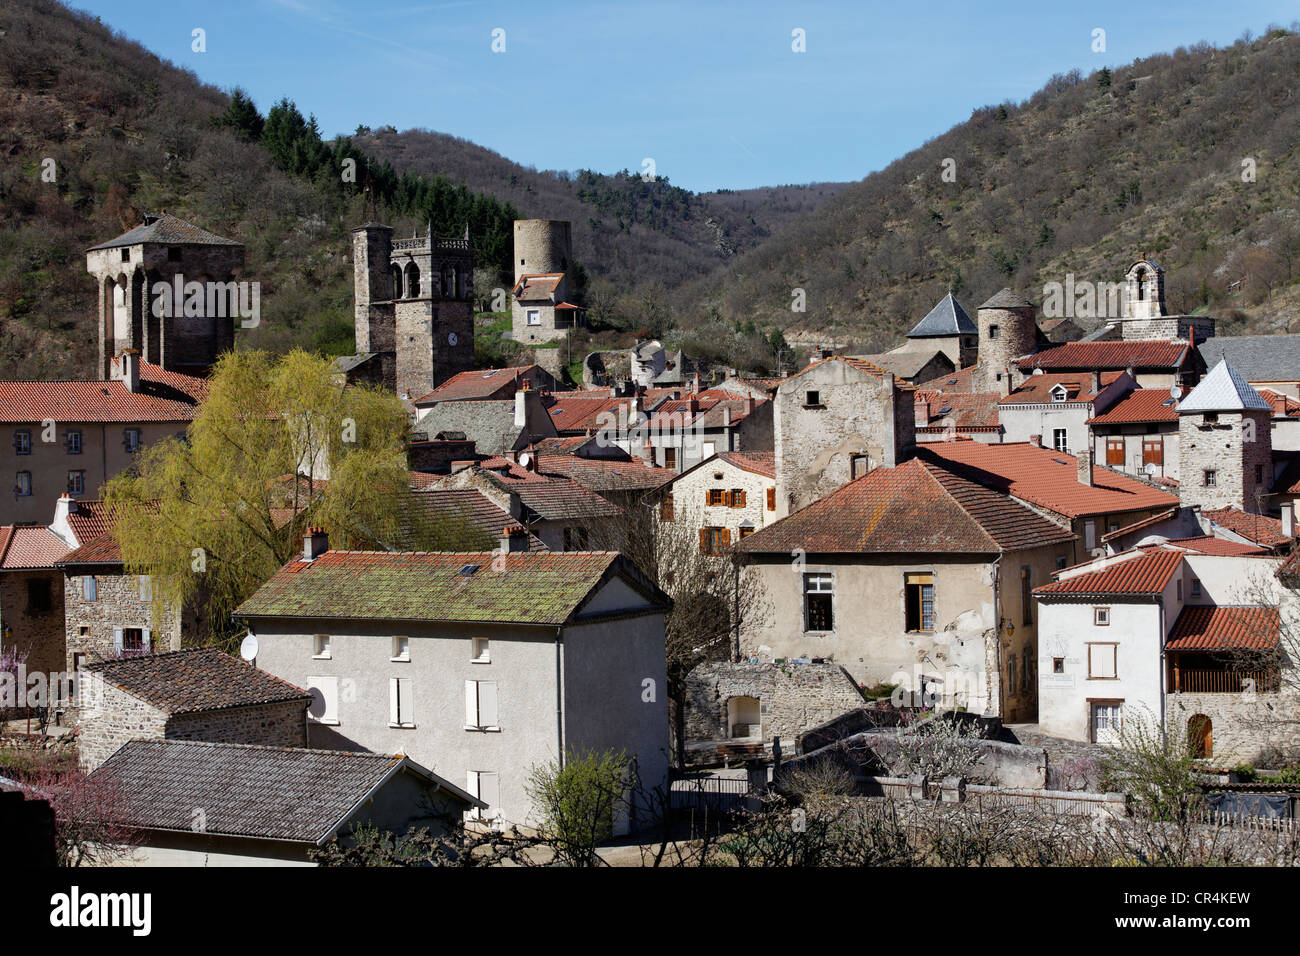 Villaggio di Blesle, etichettati Les Plus Beaux Villages de France, i più bei villaggi di Francia, Haute Loire, Auvergne Foto Stock